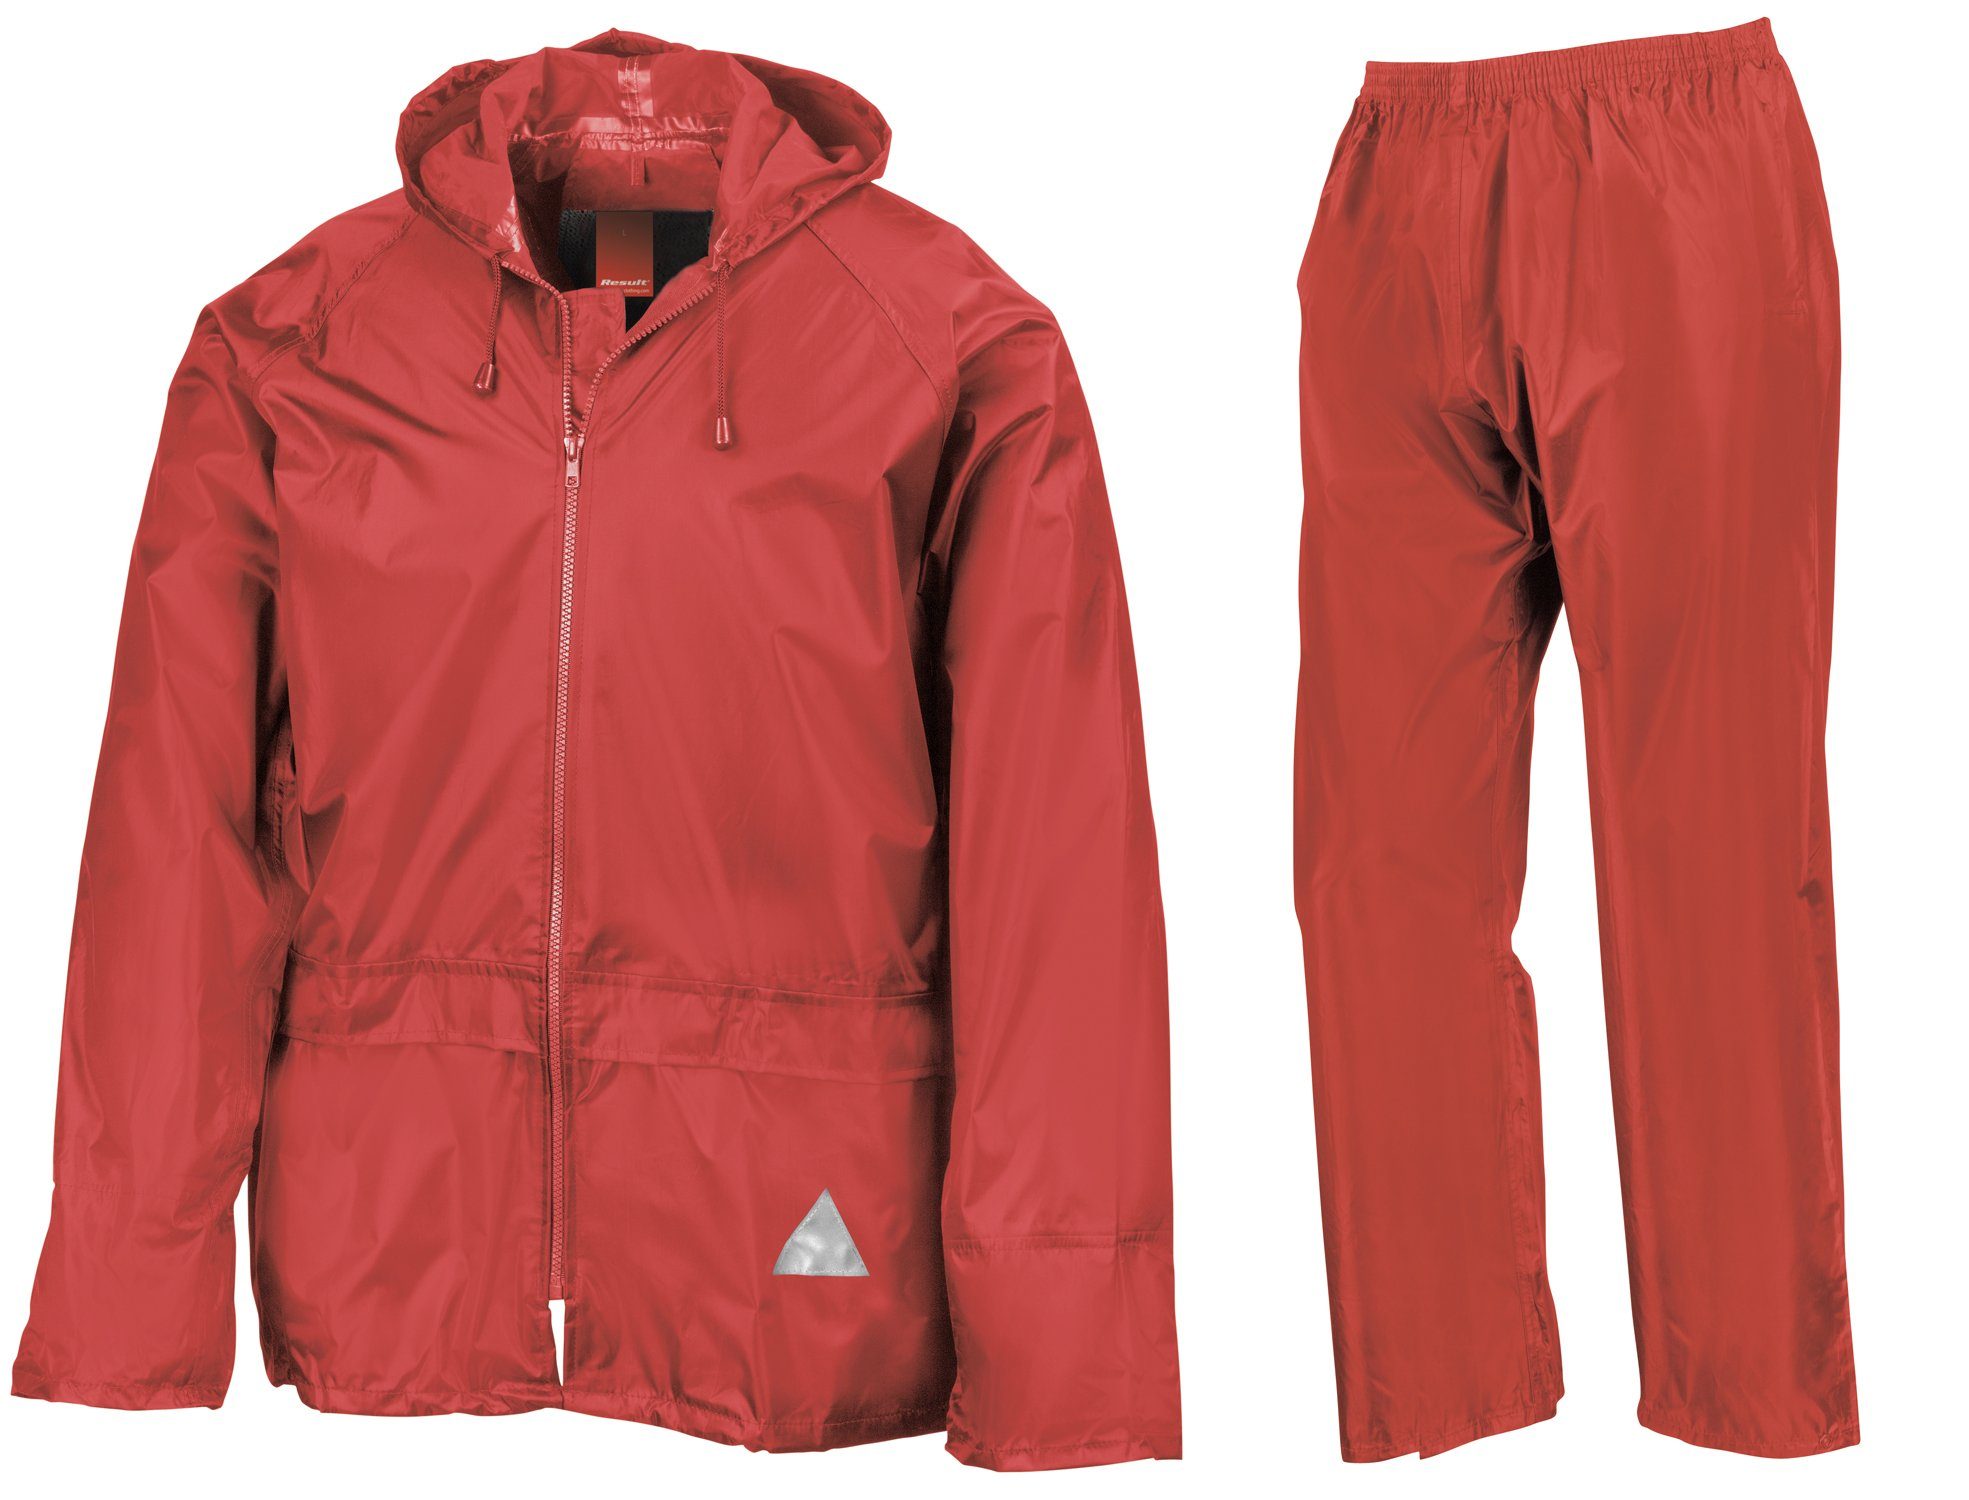 RED Regenanzug FaS95 und wasserdicht Result Set Hose Regen Jacke Anzug